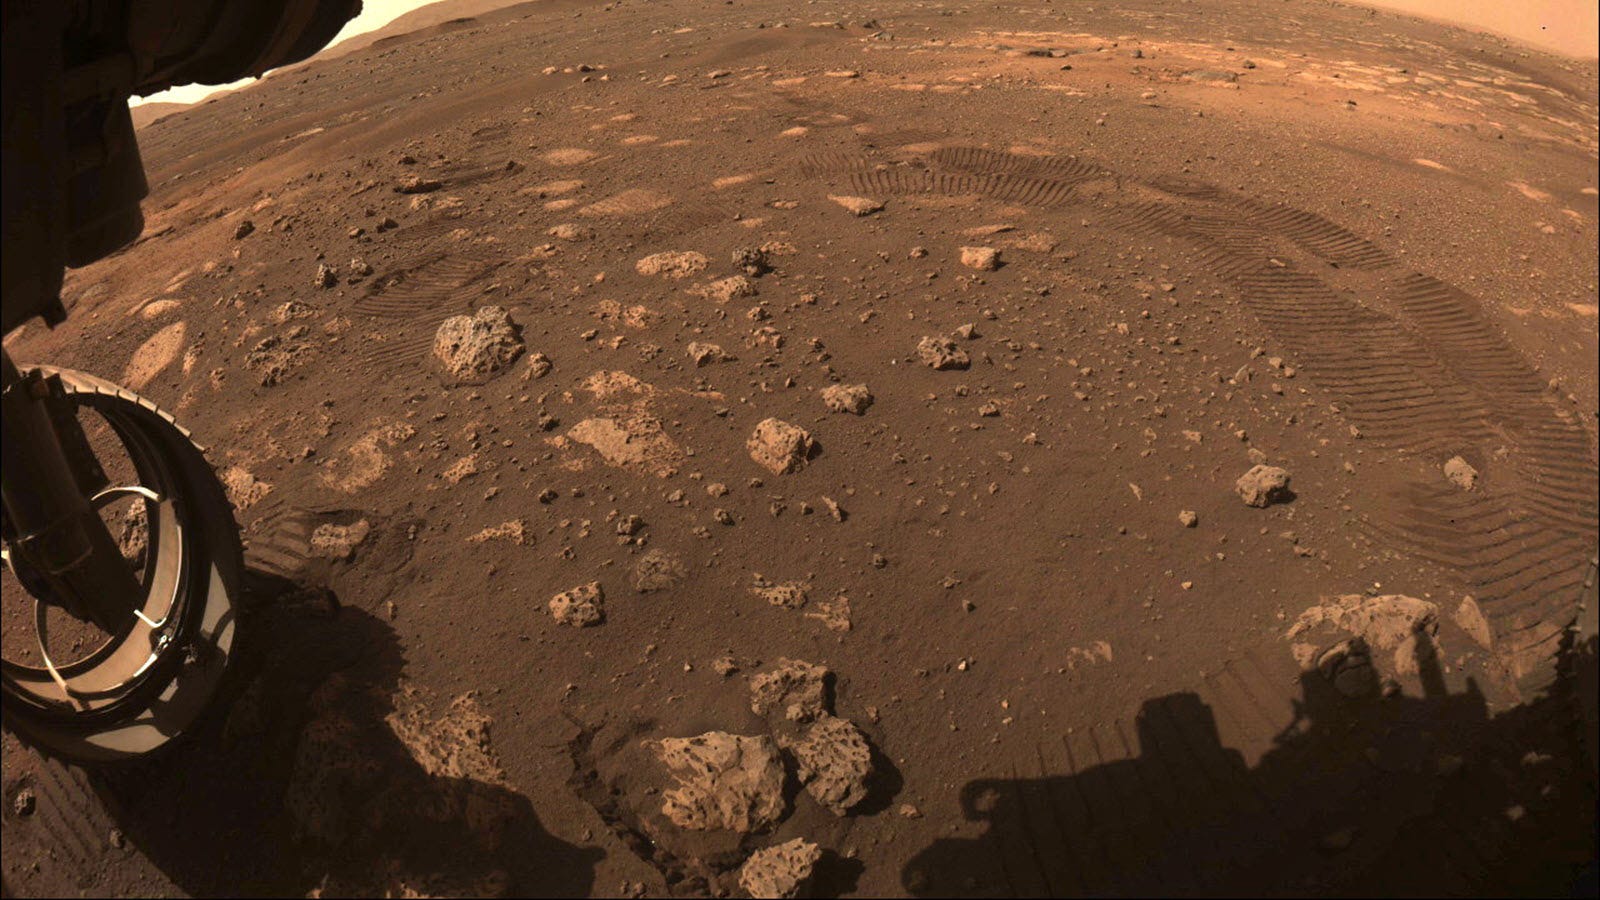 Lyssna på Mars vindar och lasrar i en inspelning gjord av Perseverance Rover